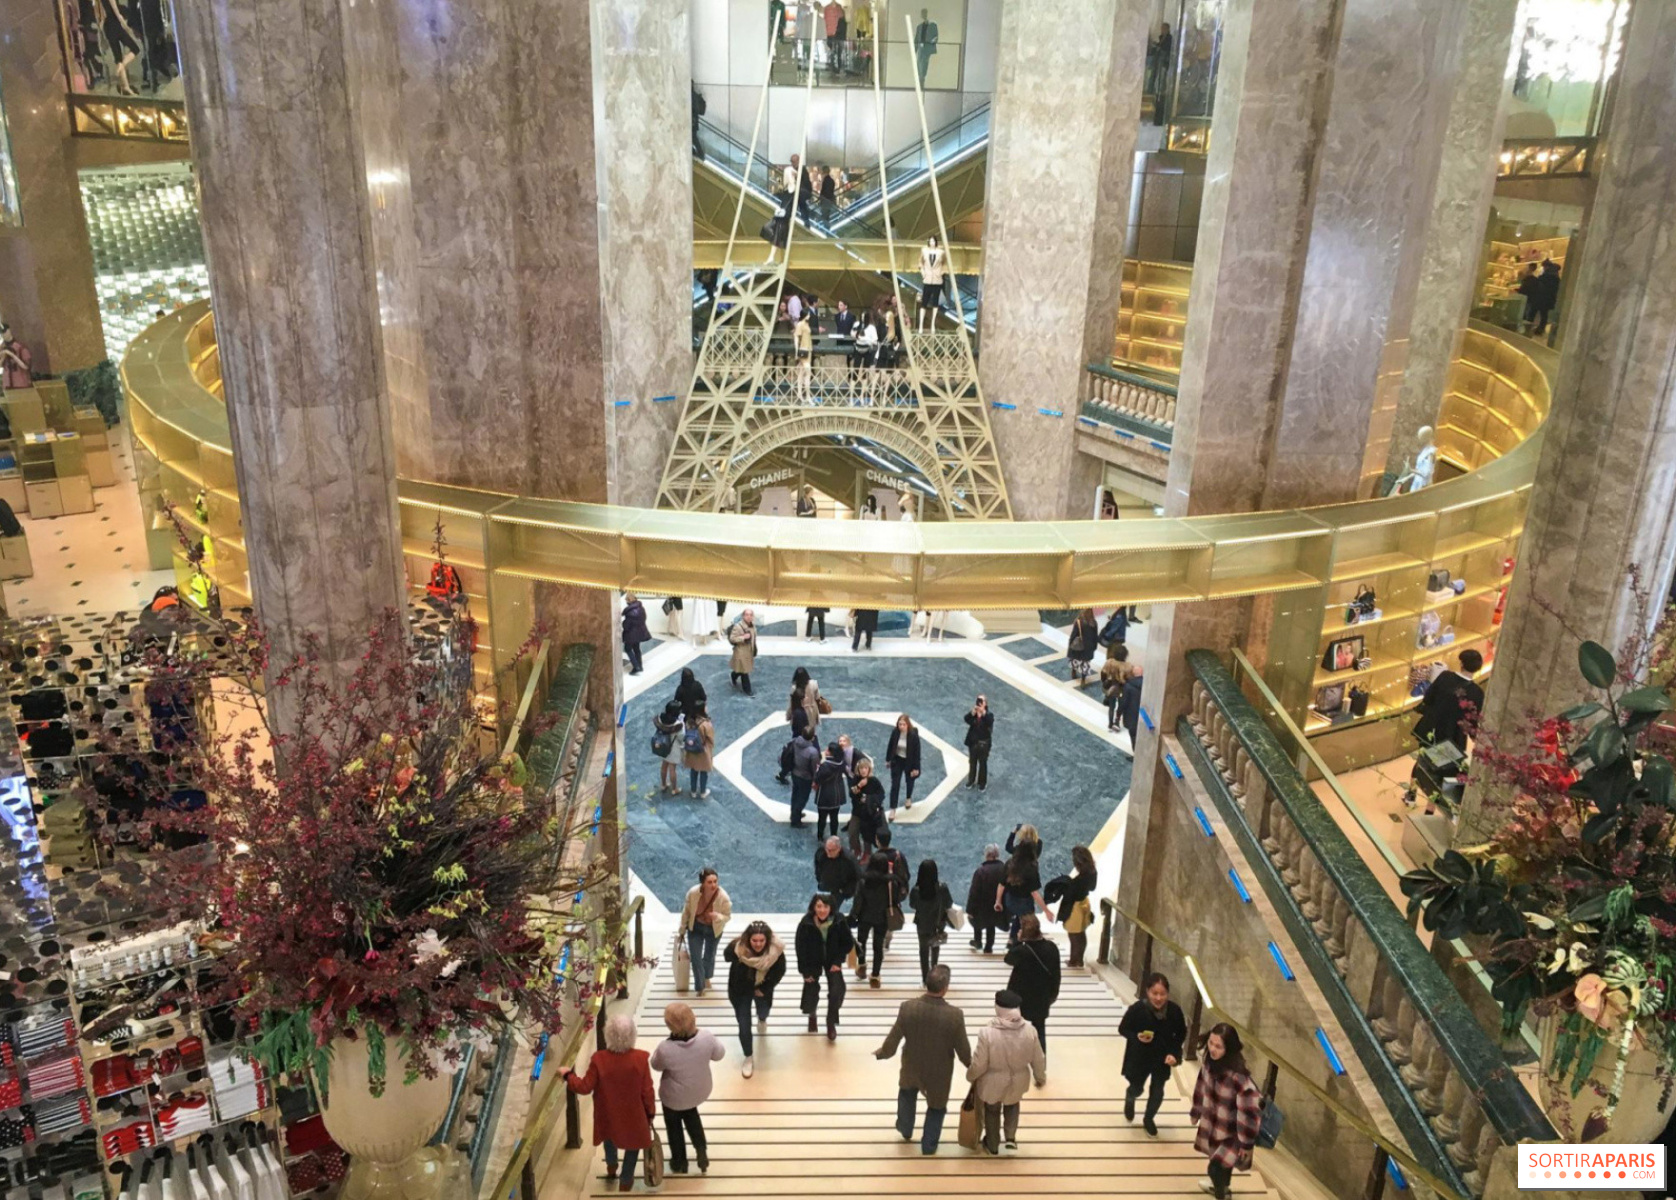 Galeries Lafayette Champs-Elysées reopens 